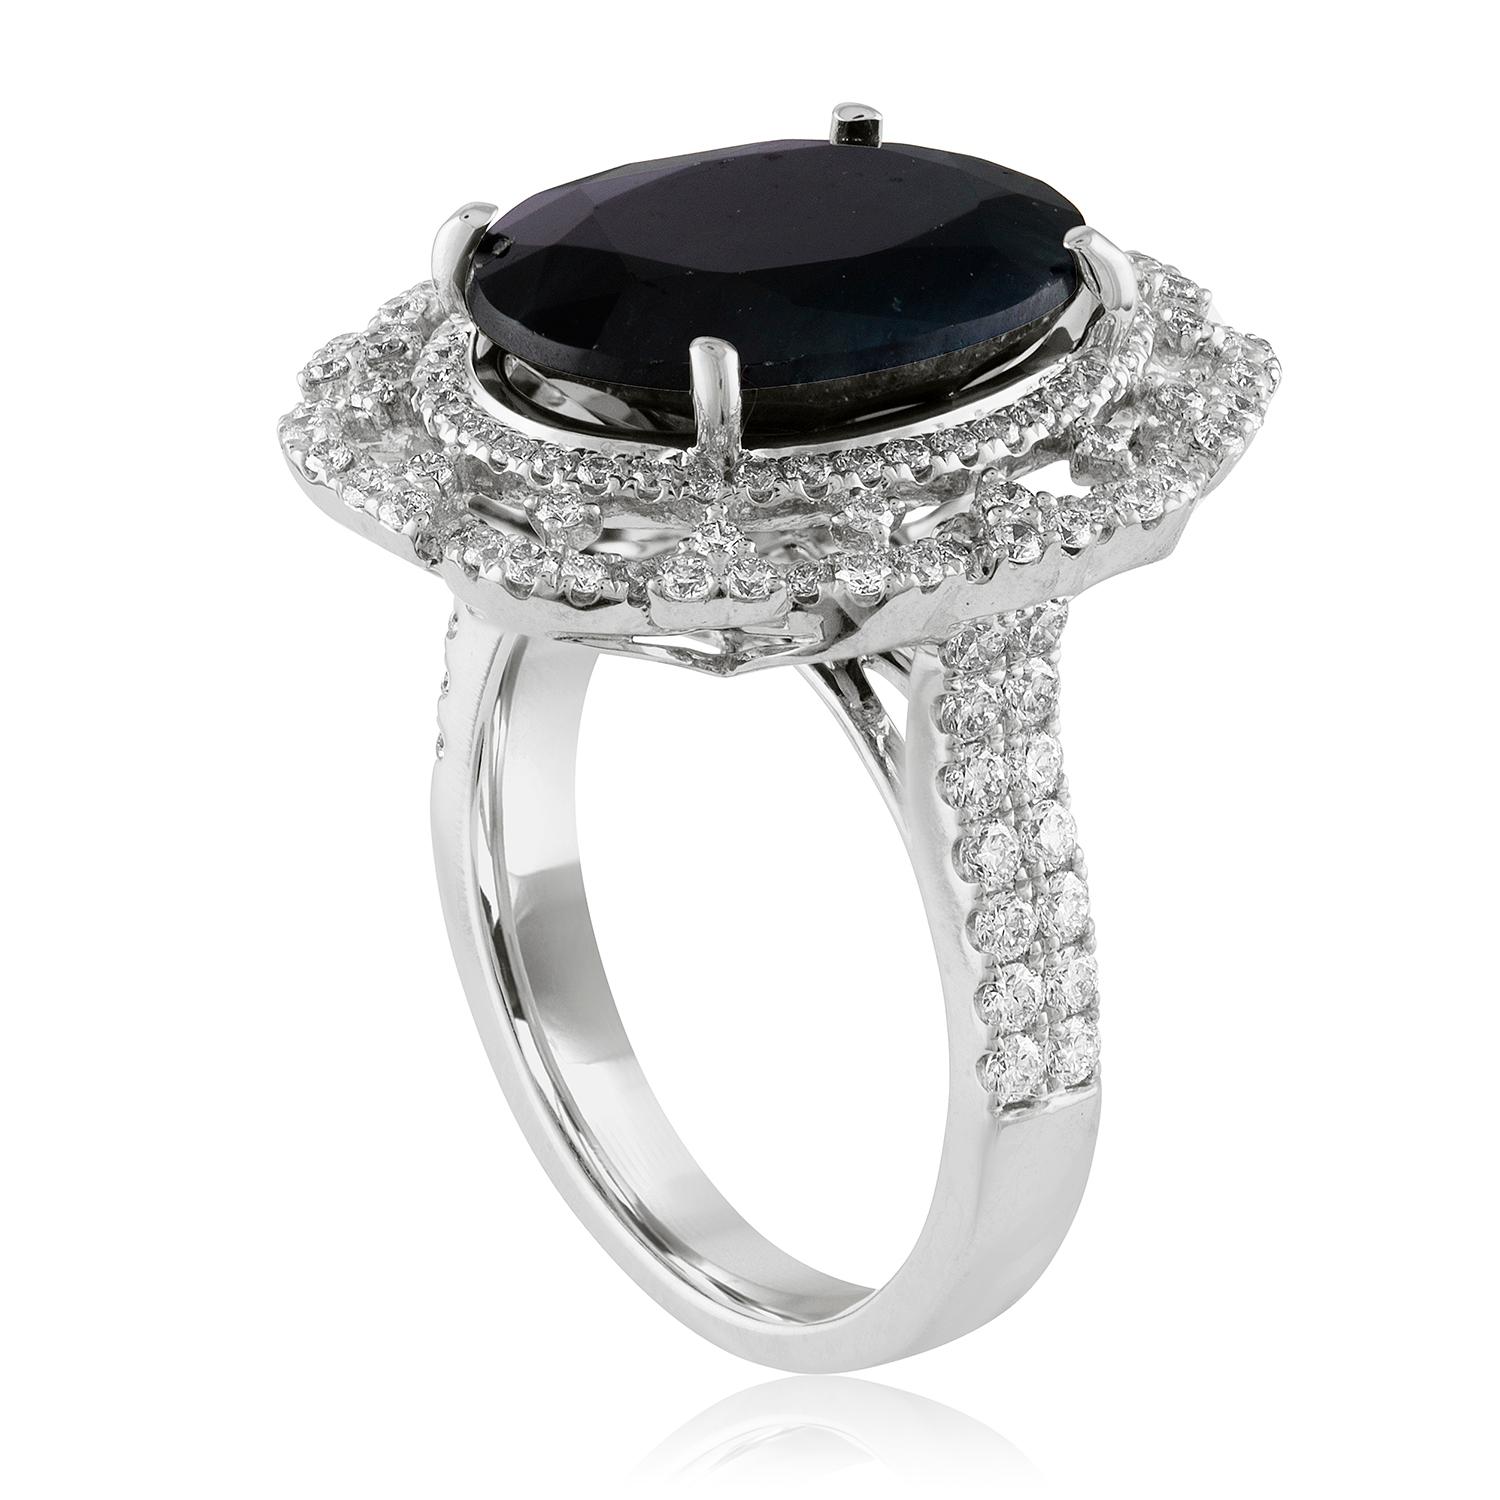 Schöner klassischer ovaler Halo-Ring.
Der Ring ist aus 18 Karat Weißgold.
Der Mittelstein ist ein ovaler 8,49 Karat dunkler grünlich-blauer Saphir.
Der Saphir ist von GIA zertifiziert, erhitzt.
Der Ring hat 1,05 Karat in Diamanten F/G VS/SI.
Die